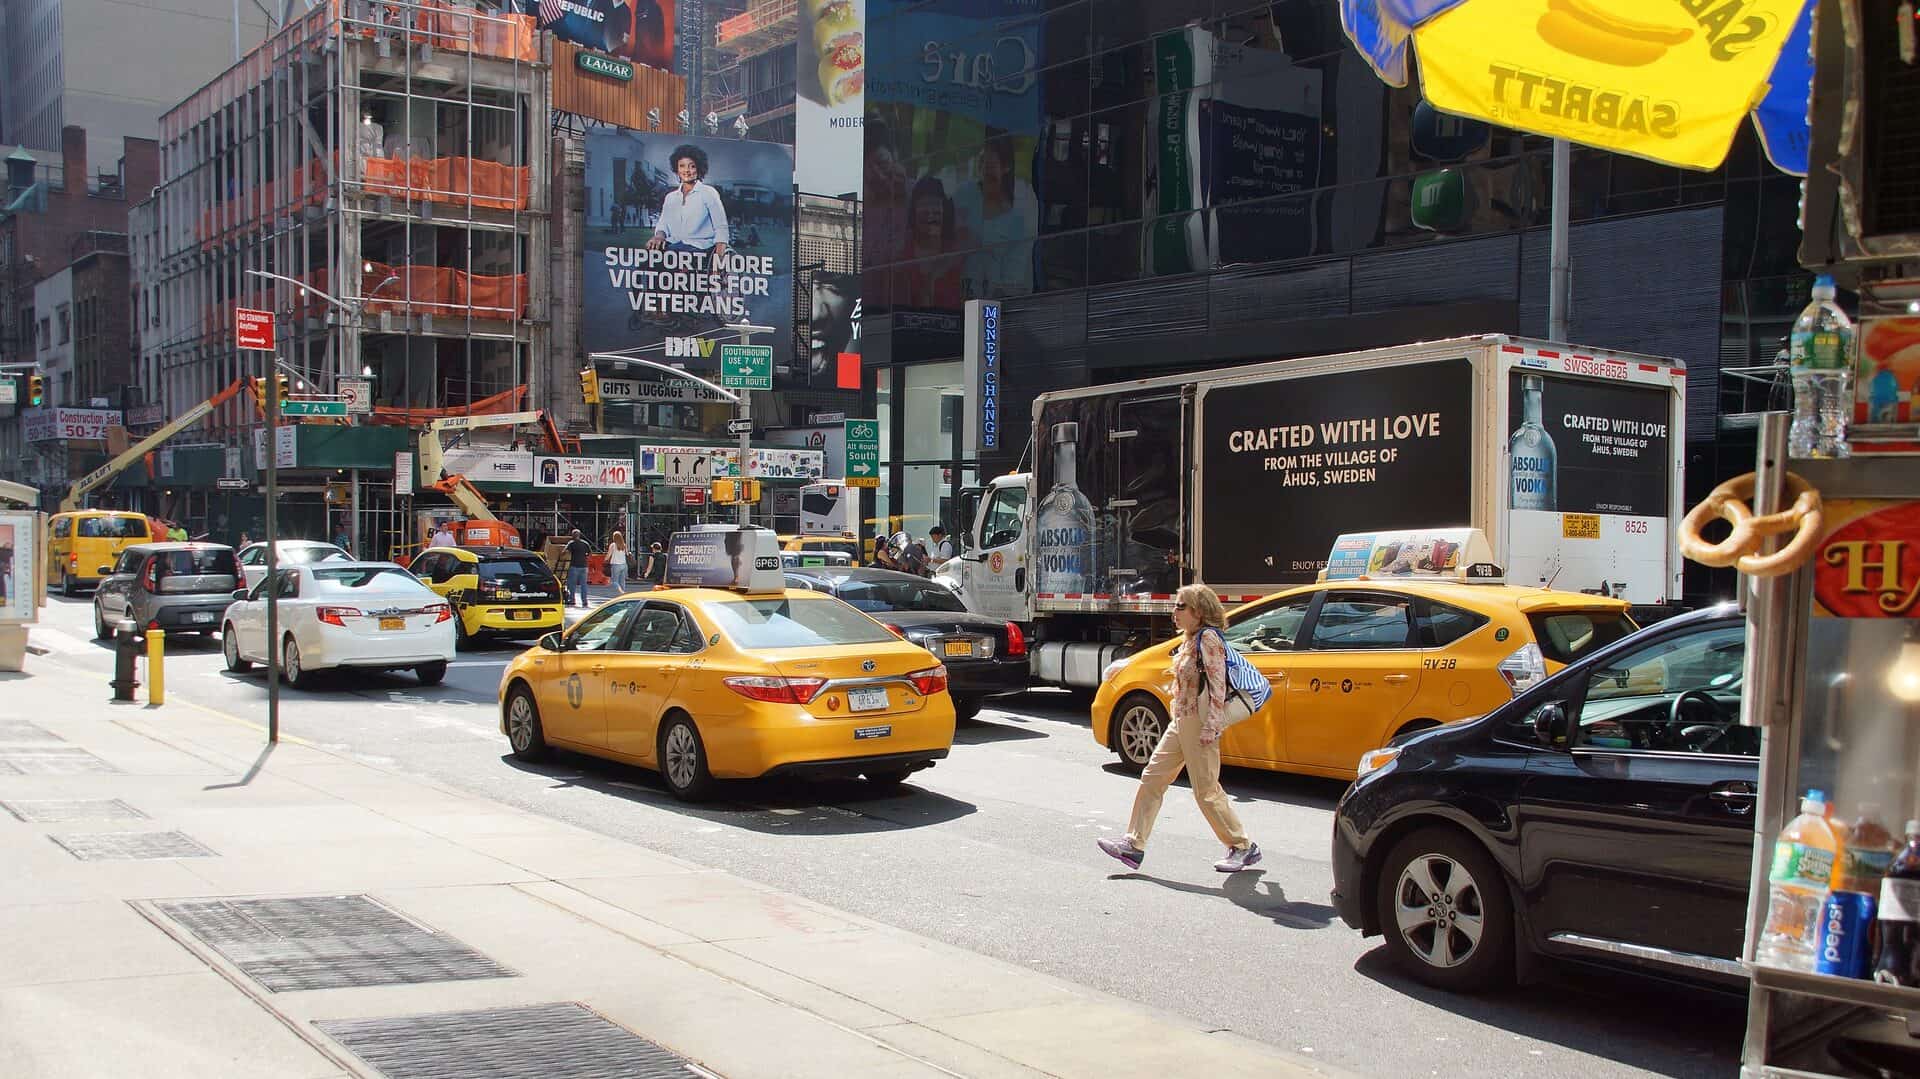 DownTown Manhattan med de velkendte gule taxi